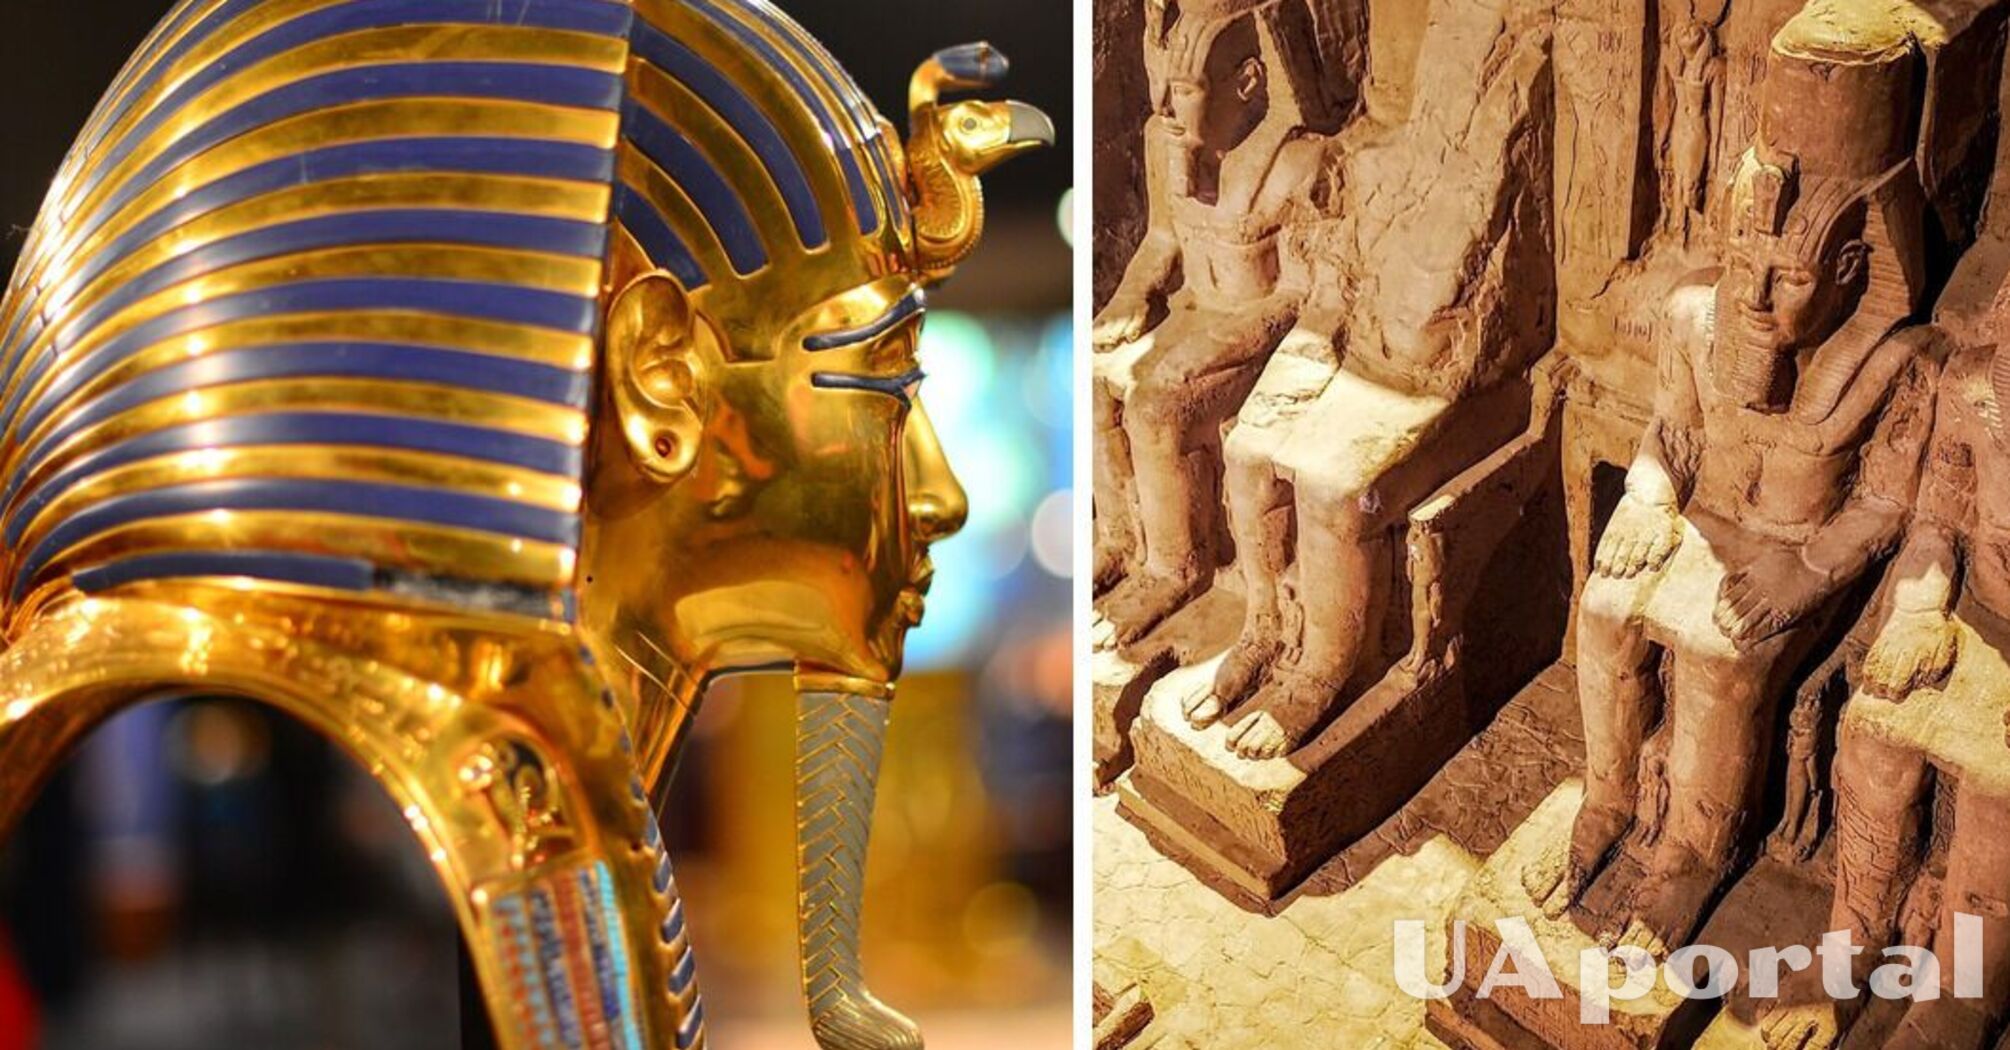 Известный египтолог предполагает, что Гробница Тутанхамона может скрывать еще одну погребальную камеру